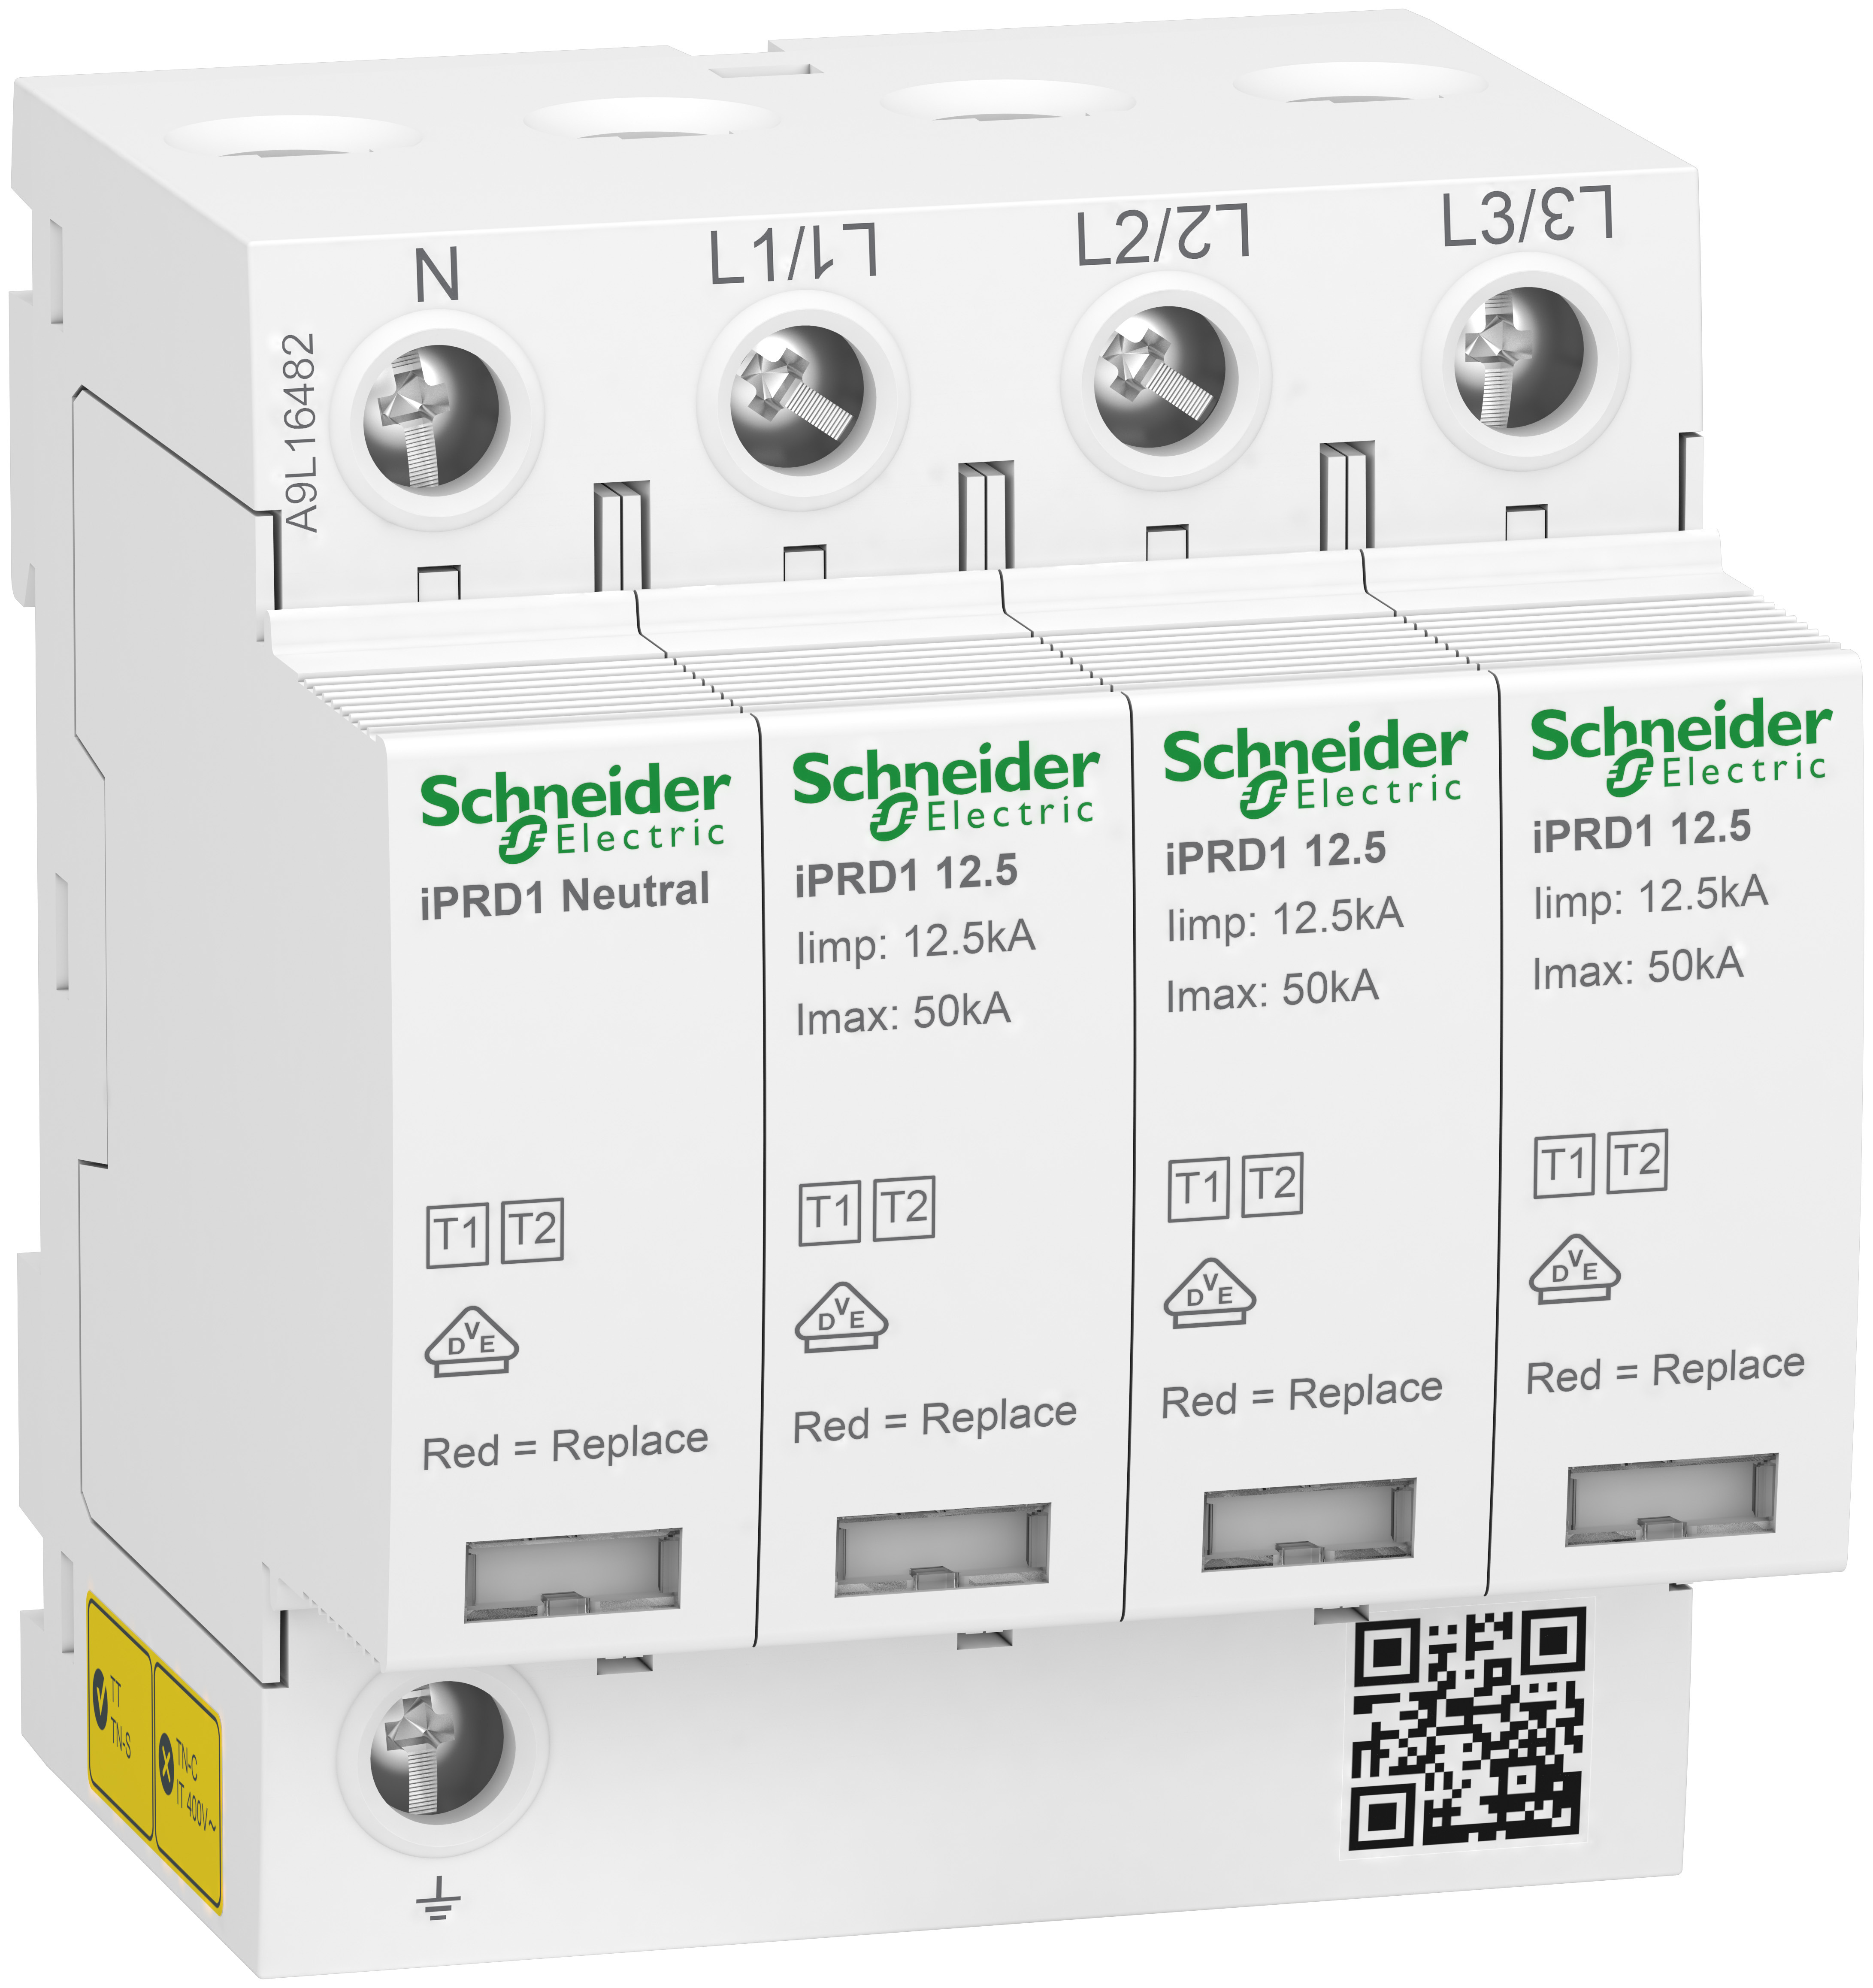 Schneider Electric представила новые устройства для защиты электрооборудования от прямых ударов молнии 